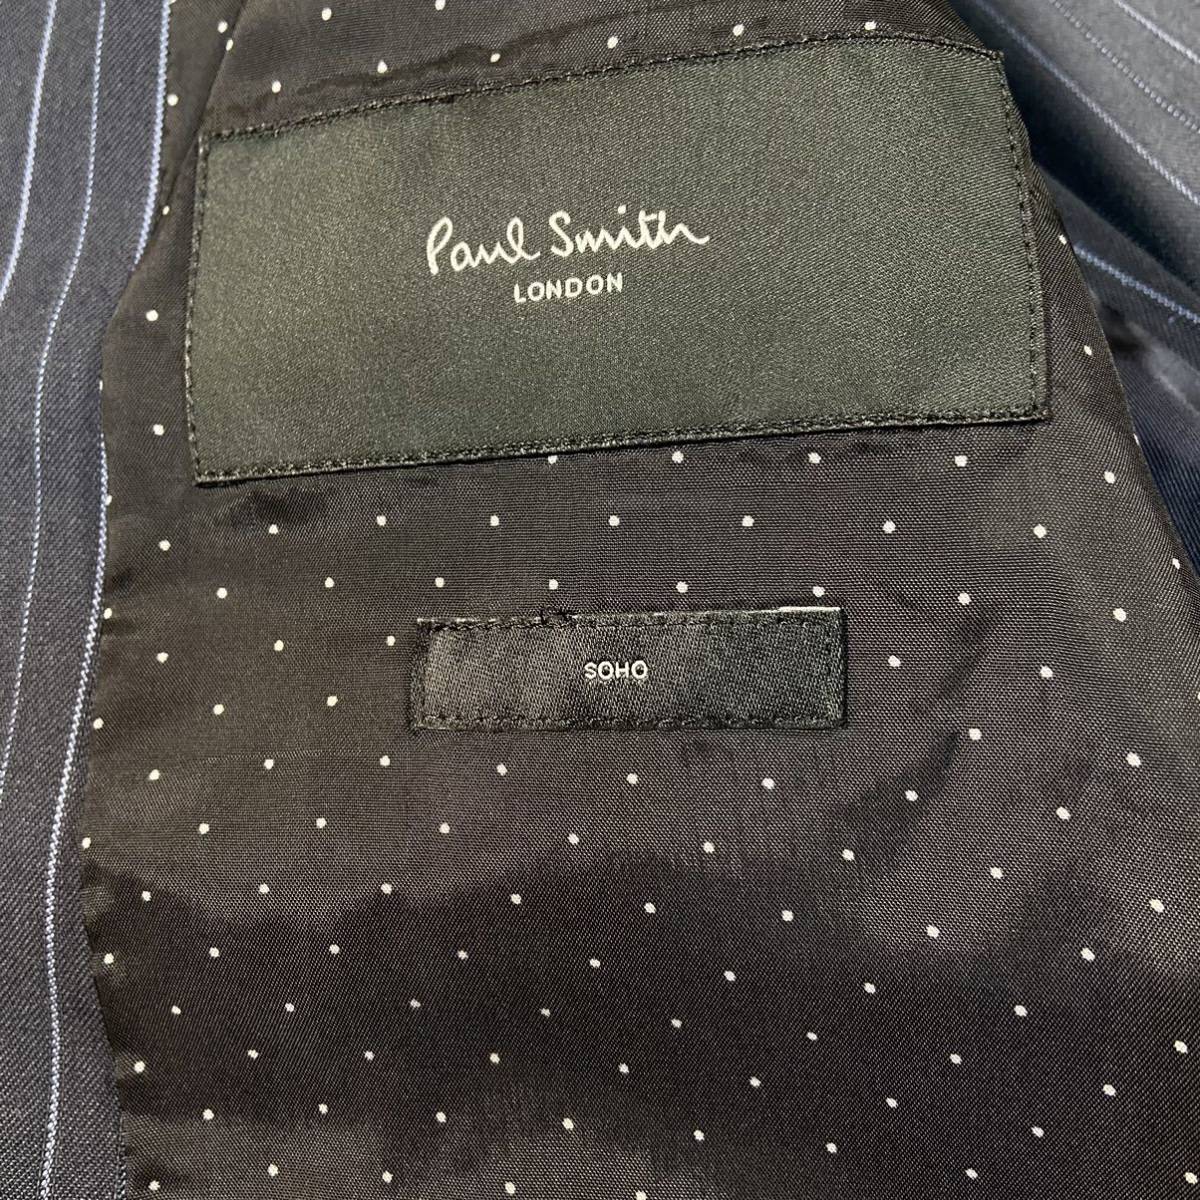 【最高級の逸品】Paul Smith ポールスミス スーツ セットアップ 高級生地 裏地 ドット 水玉 SOHO ネイビー ストライプ 現行モデル_画像5